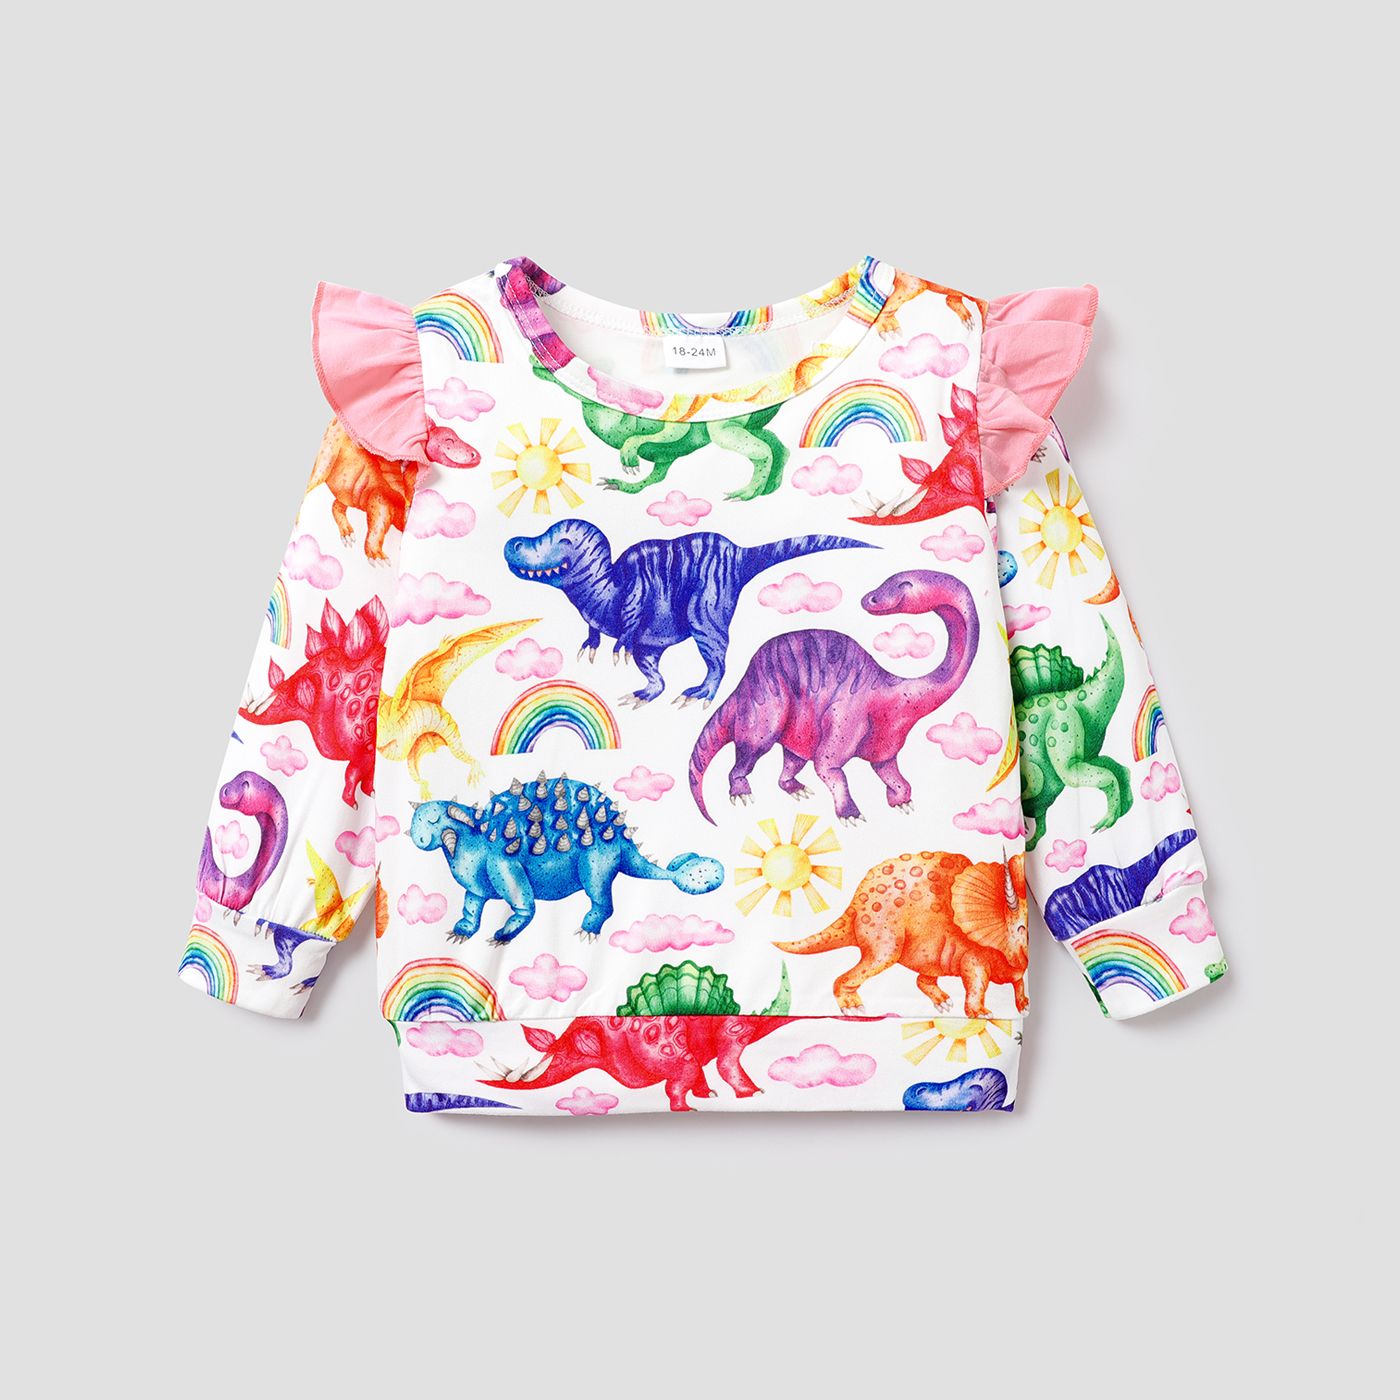 Fille Enfant En Bas âge Arc Nuage De Dinosaure Froissée / Imprimé Floral Sweat-shirt à Manches Longues